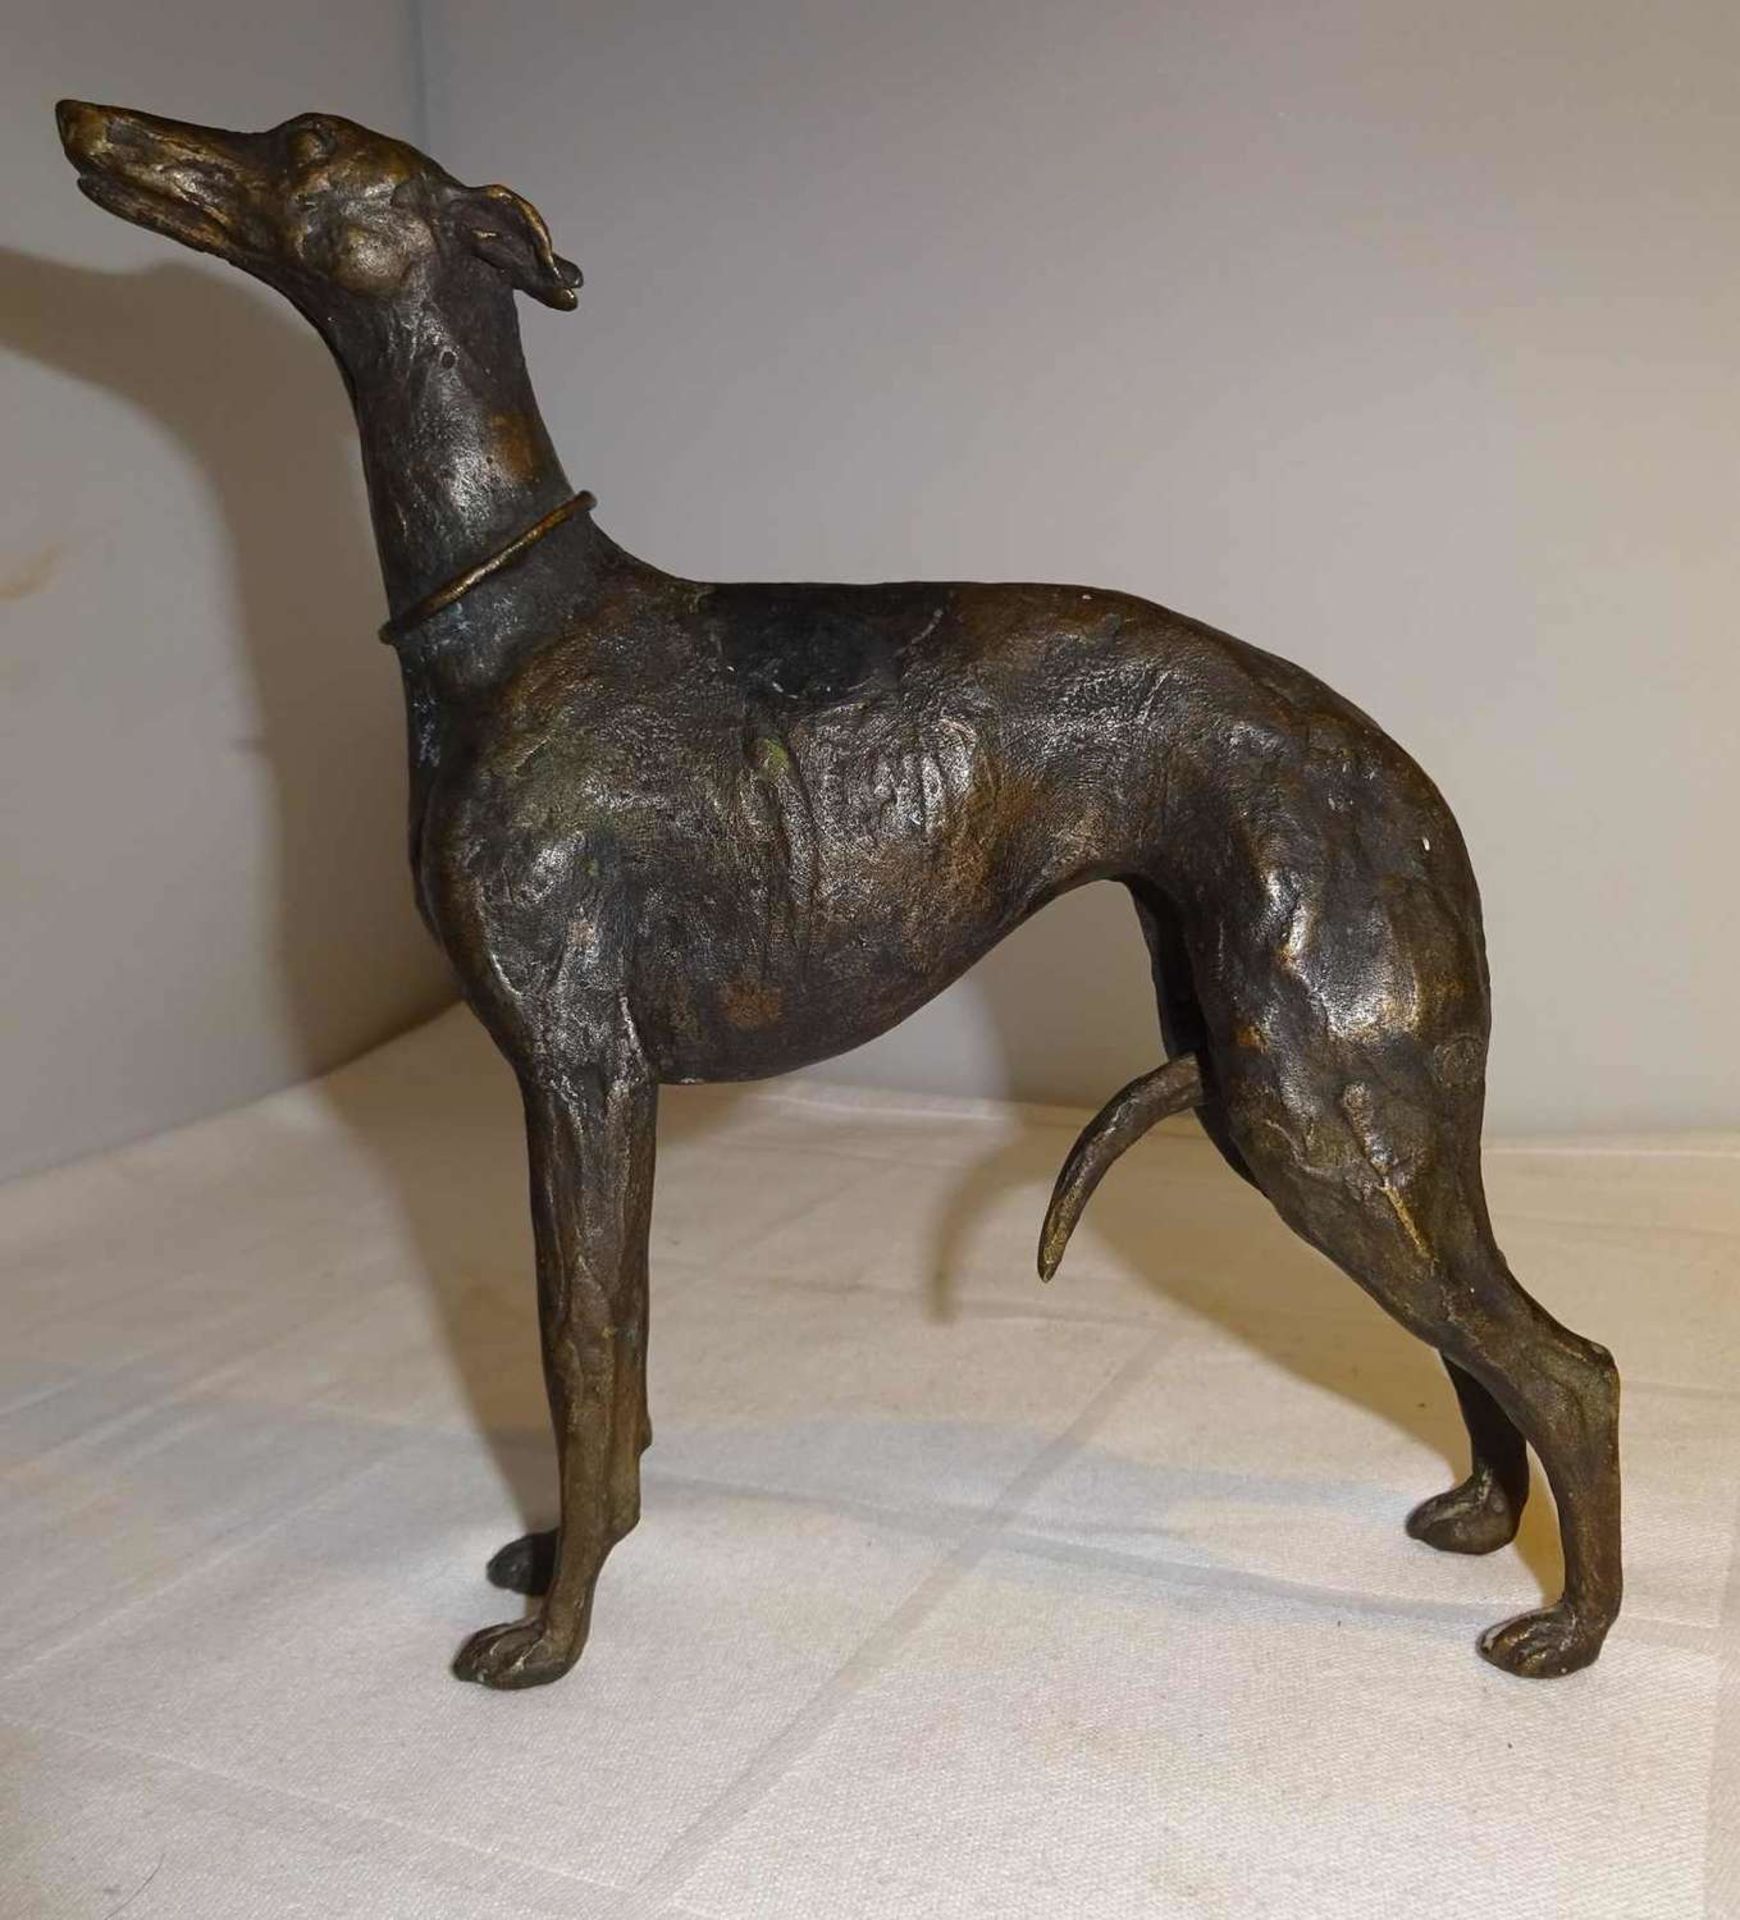 schöne Bronzefigur "Windhund", Gießerstempel M im Kreis, sehr feine detaillierte Ausführung. Maße: